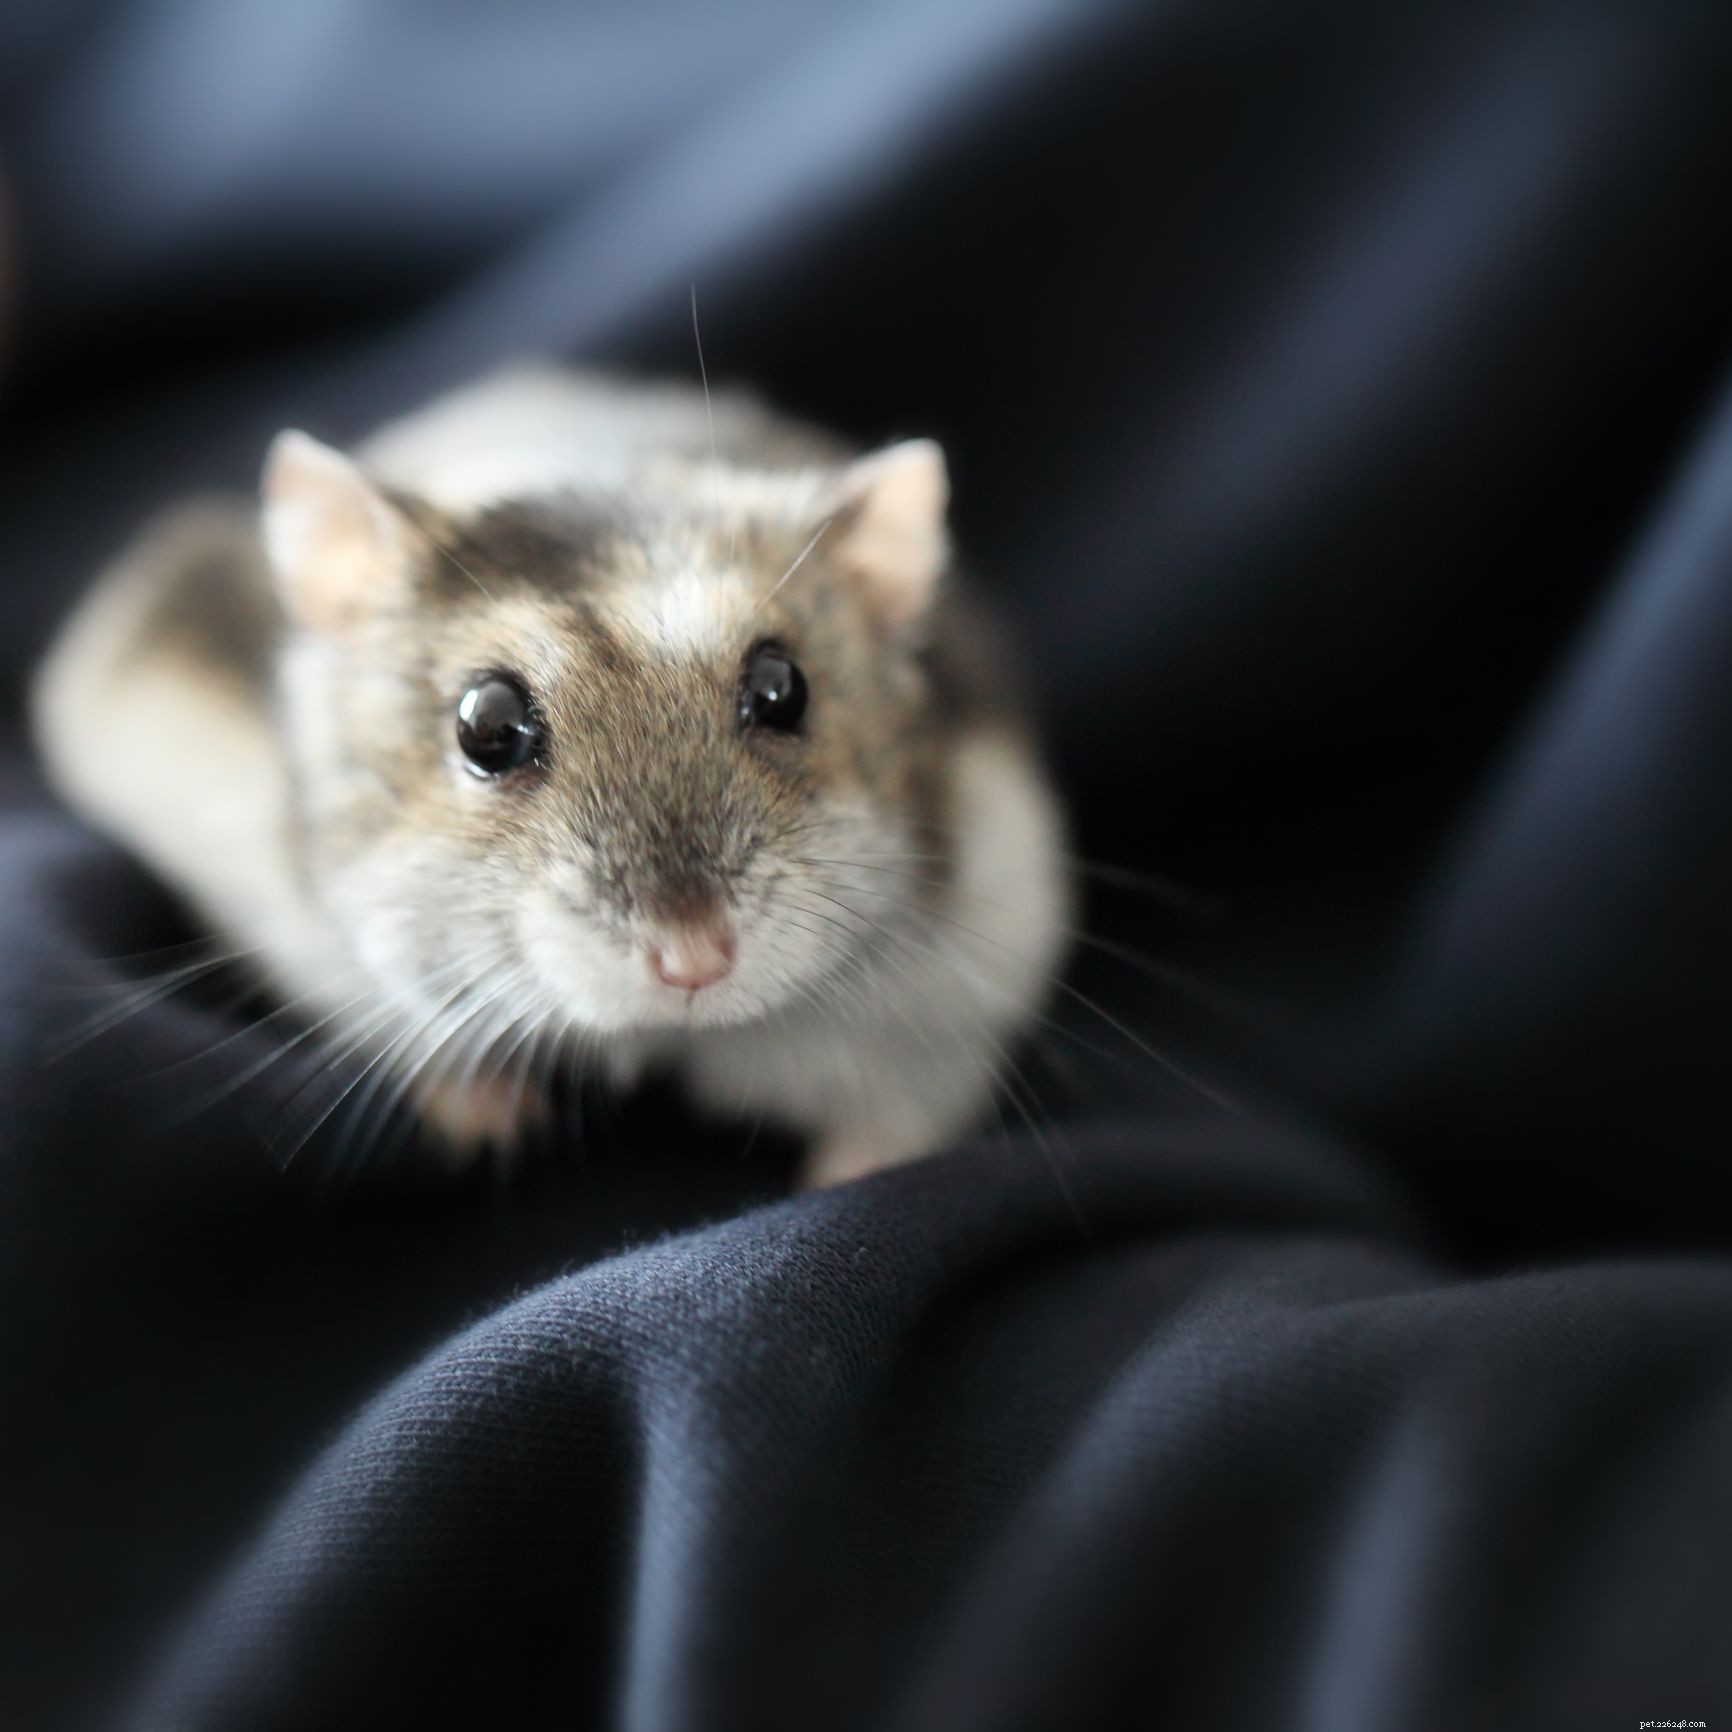 As 5 espécies de hamster mais populares mantidas como animais de estimação